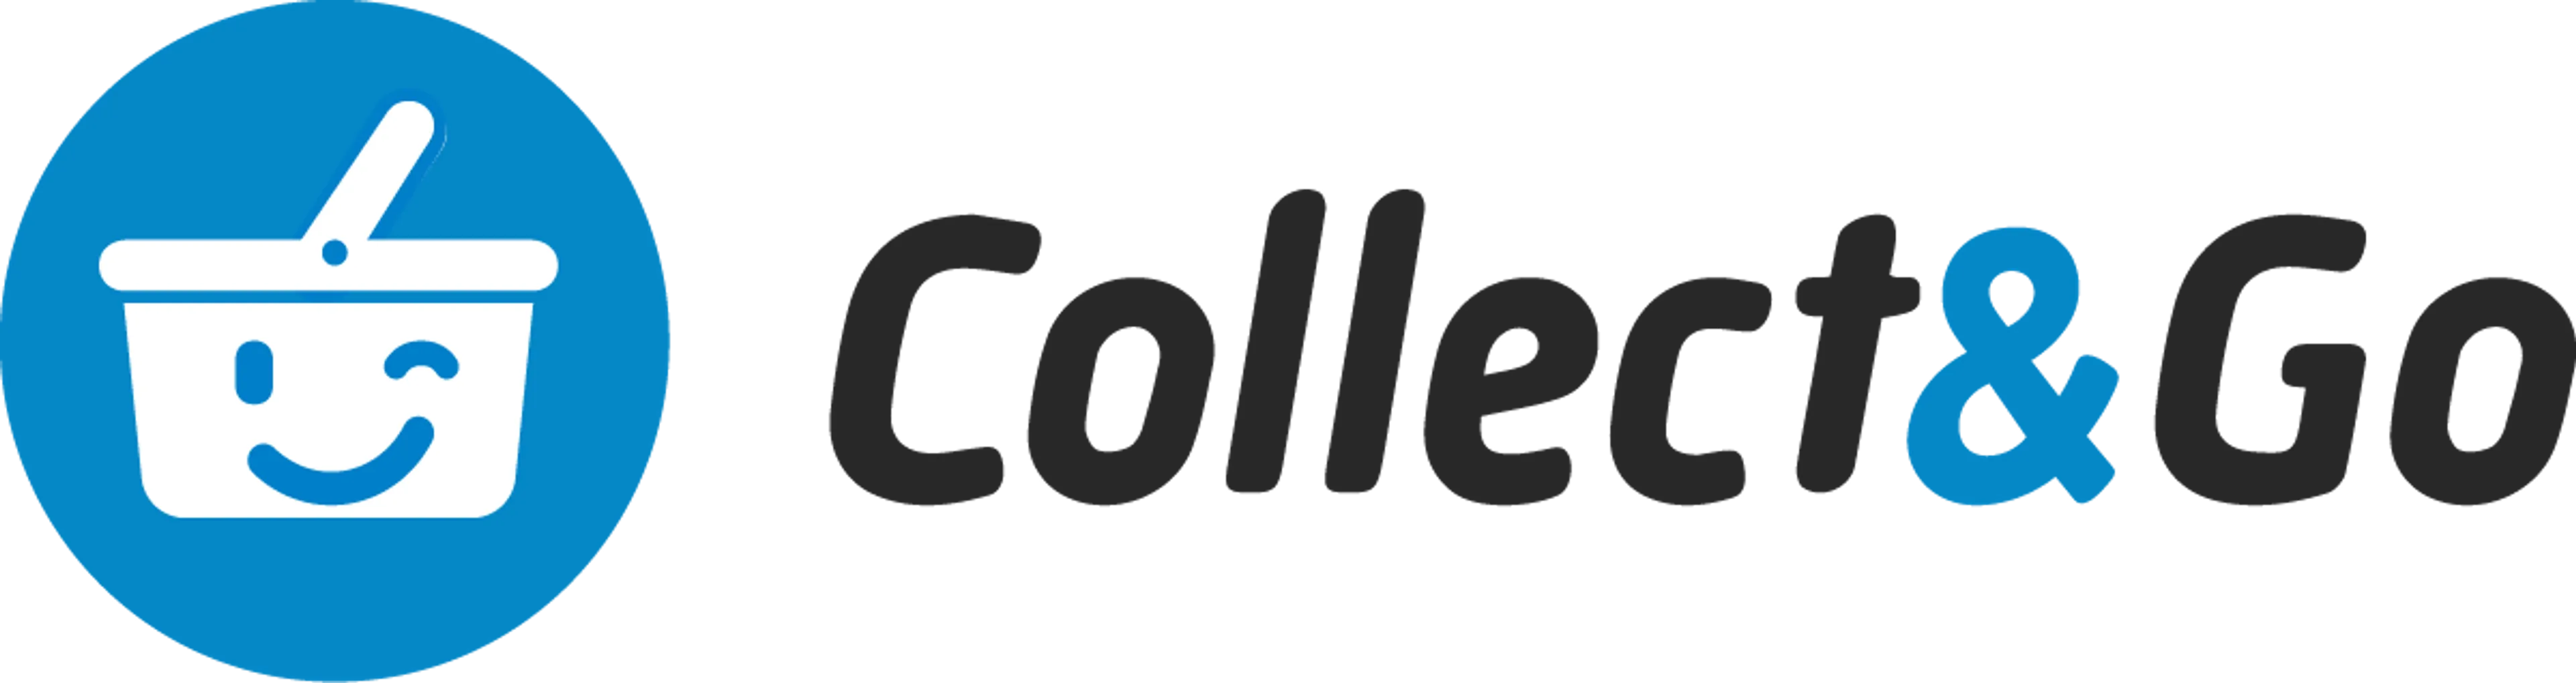 COLLECT & GO logo